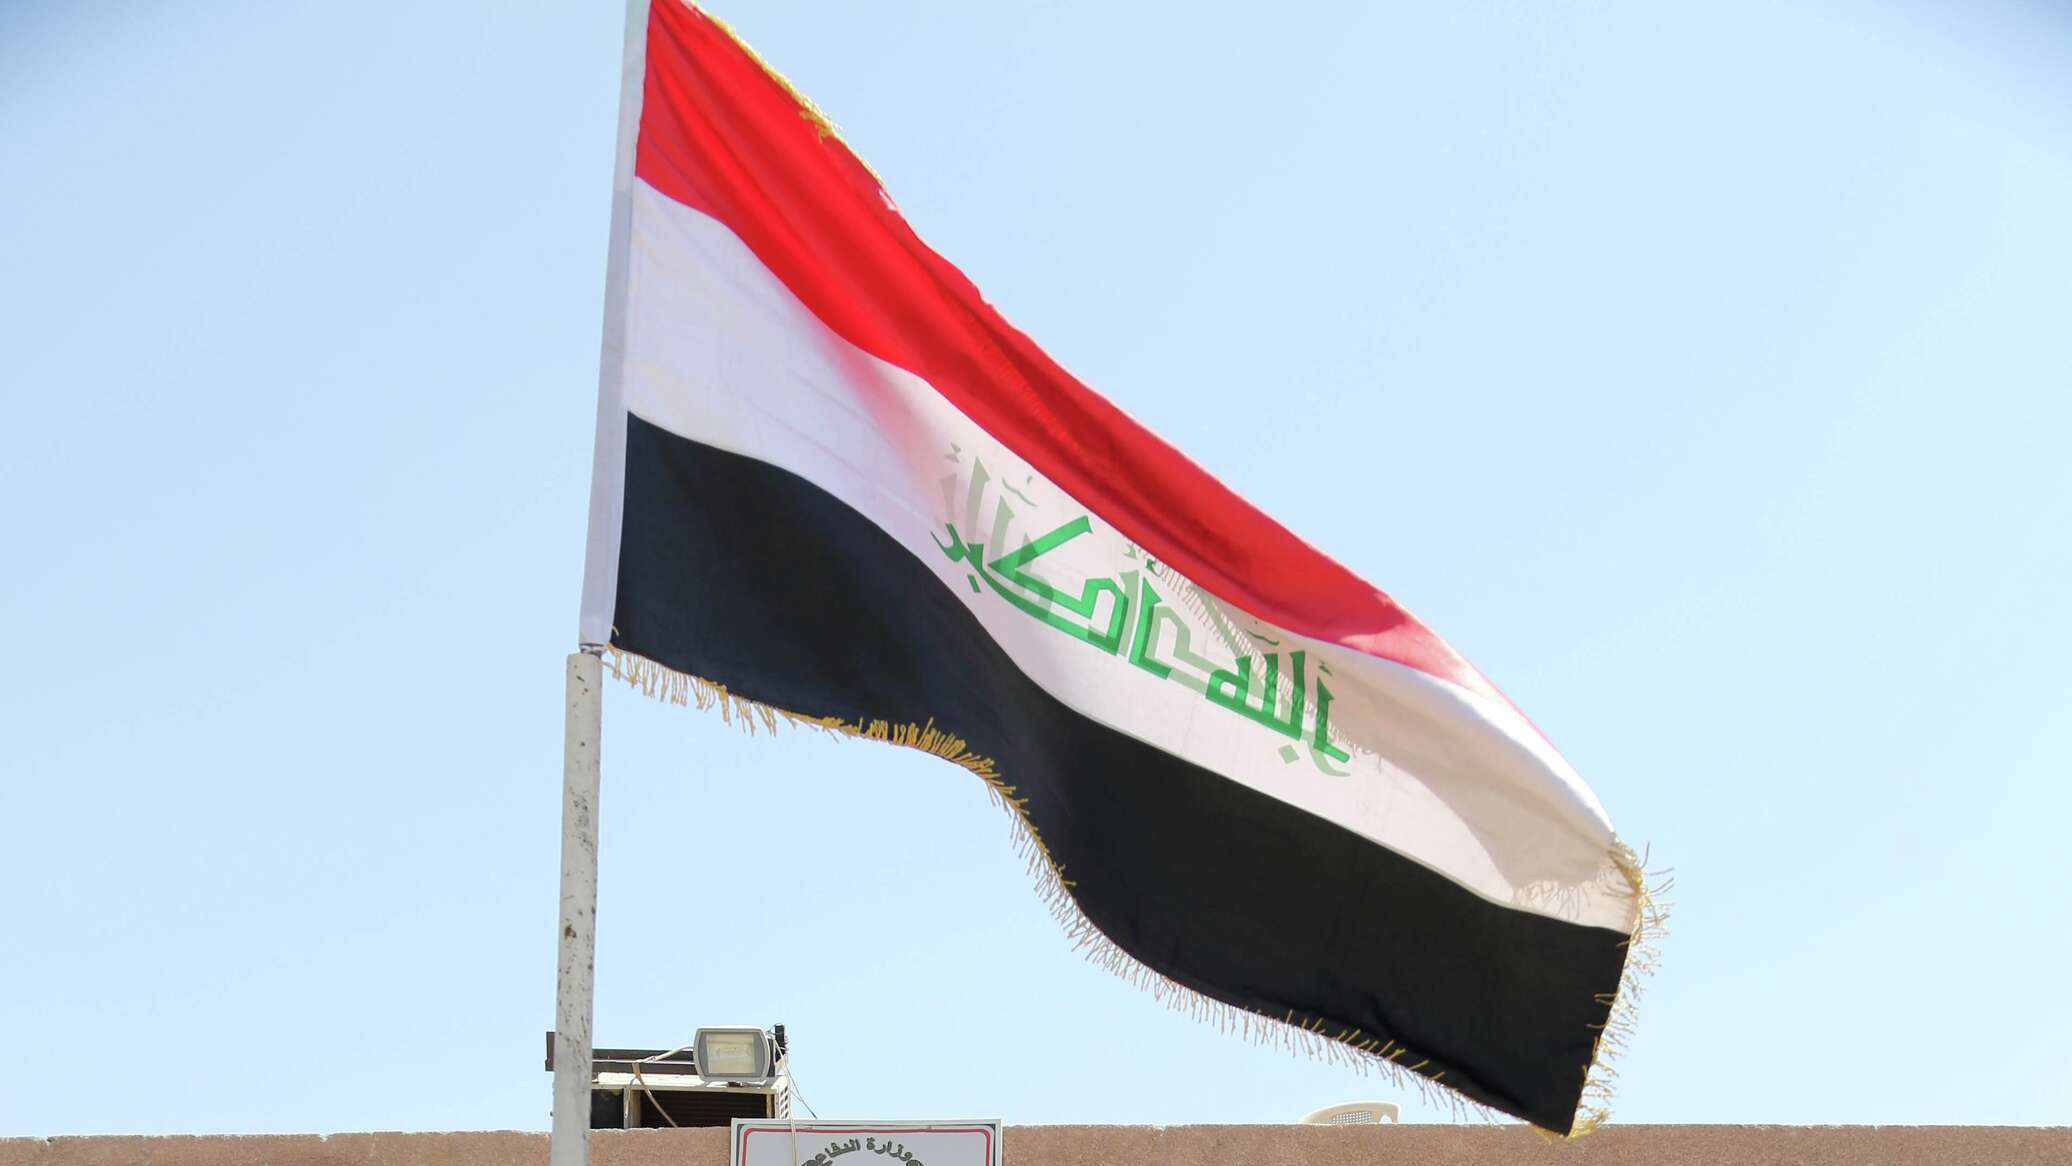 مصدر حكومي لـ"سبوتنيك": الحكومة العراقية حسمت موقفها بإنهاء مهمة "التحالف الدولي" في العراق